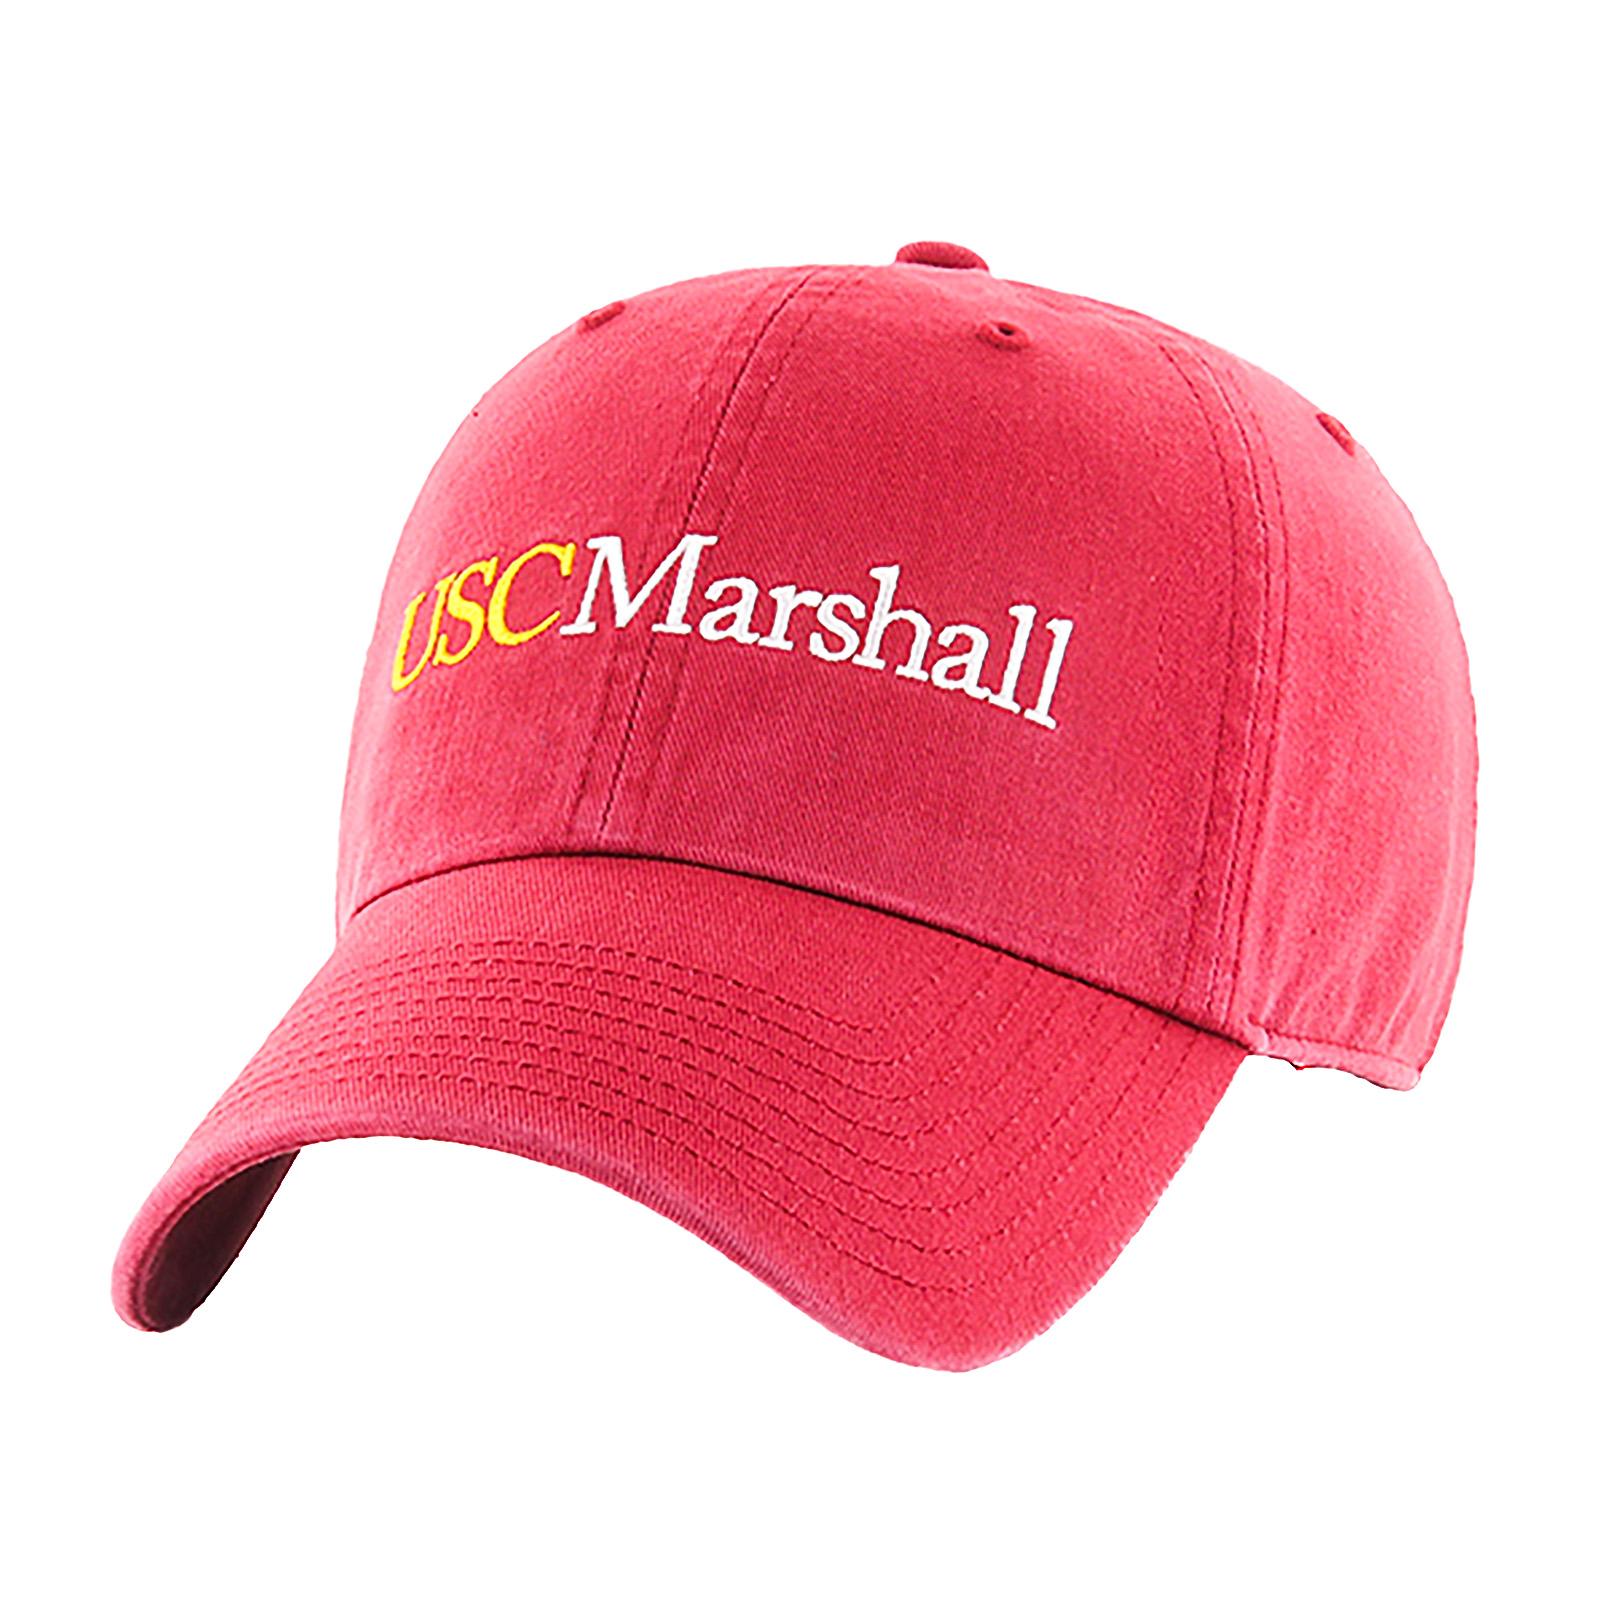 Home - USC Marshall